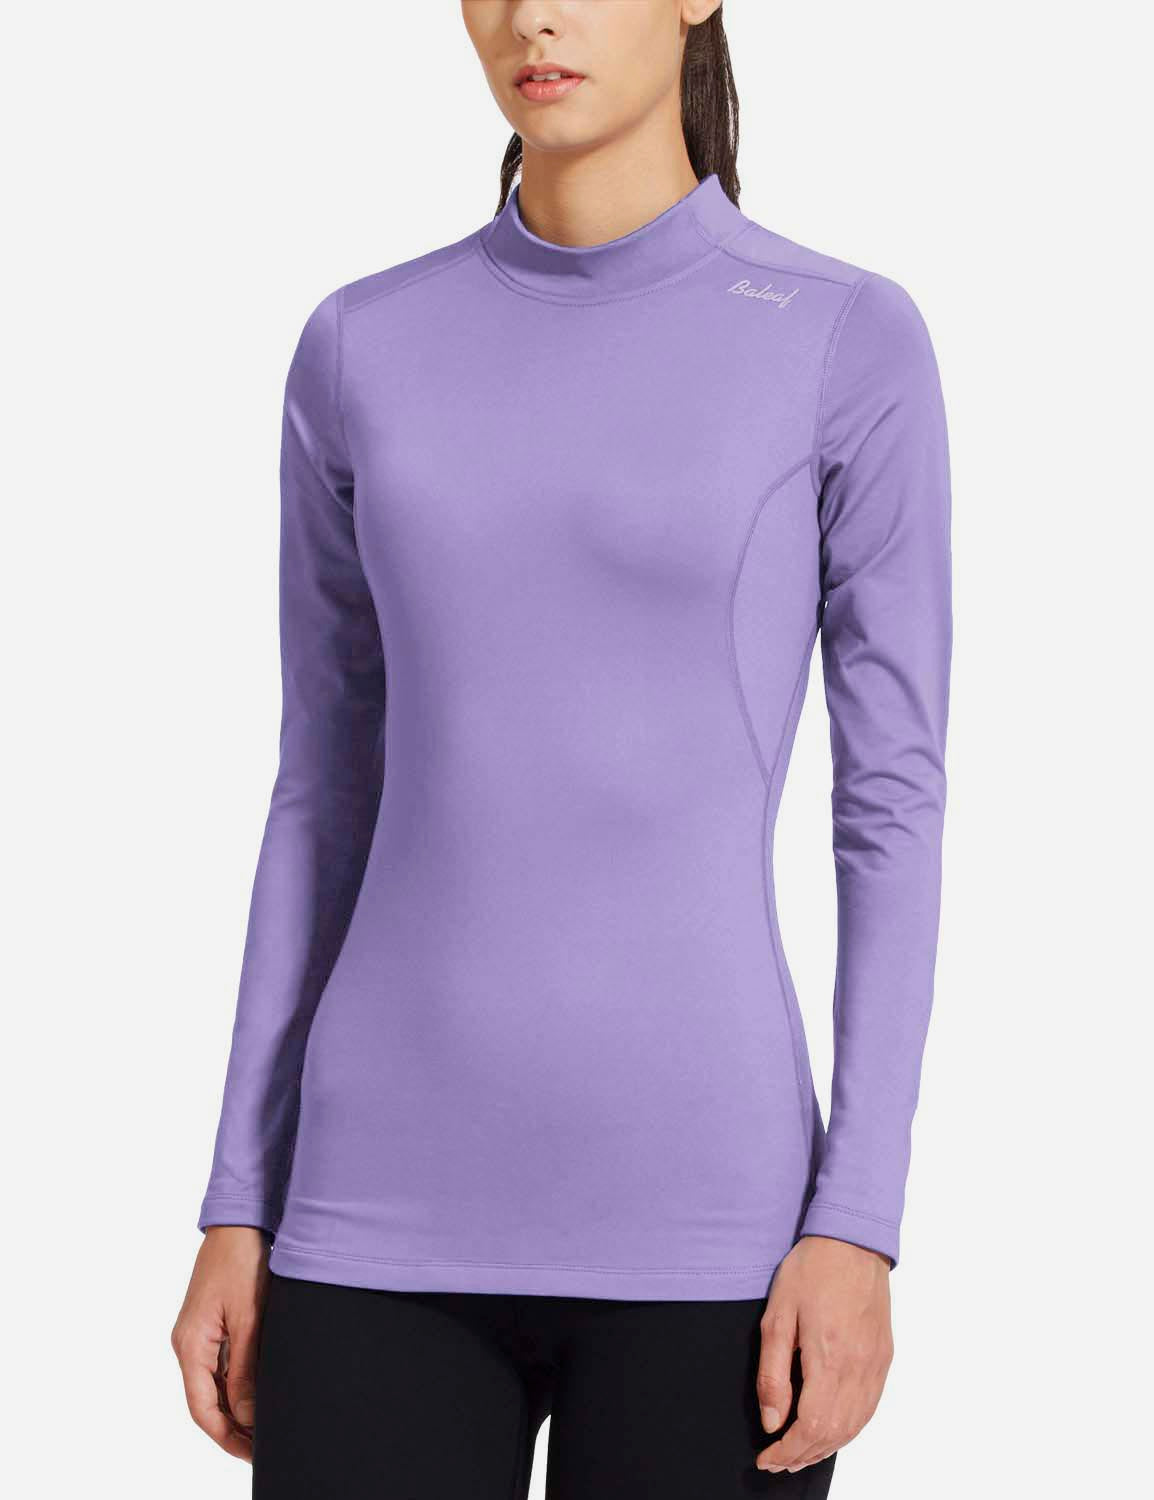 Baleaf Women's Basic Compression Mock-Neck Long Sleeved Shirt abd166 Purple Side